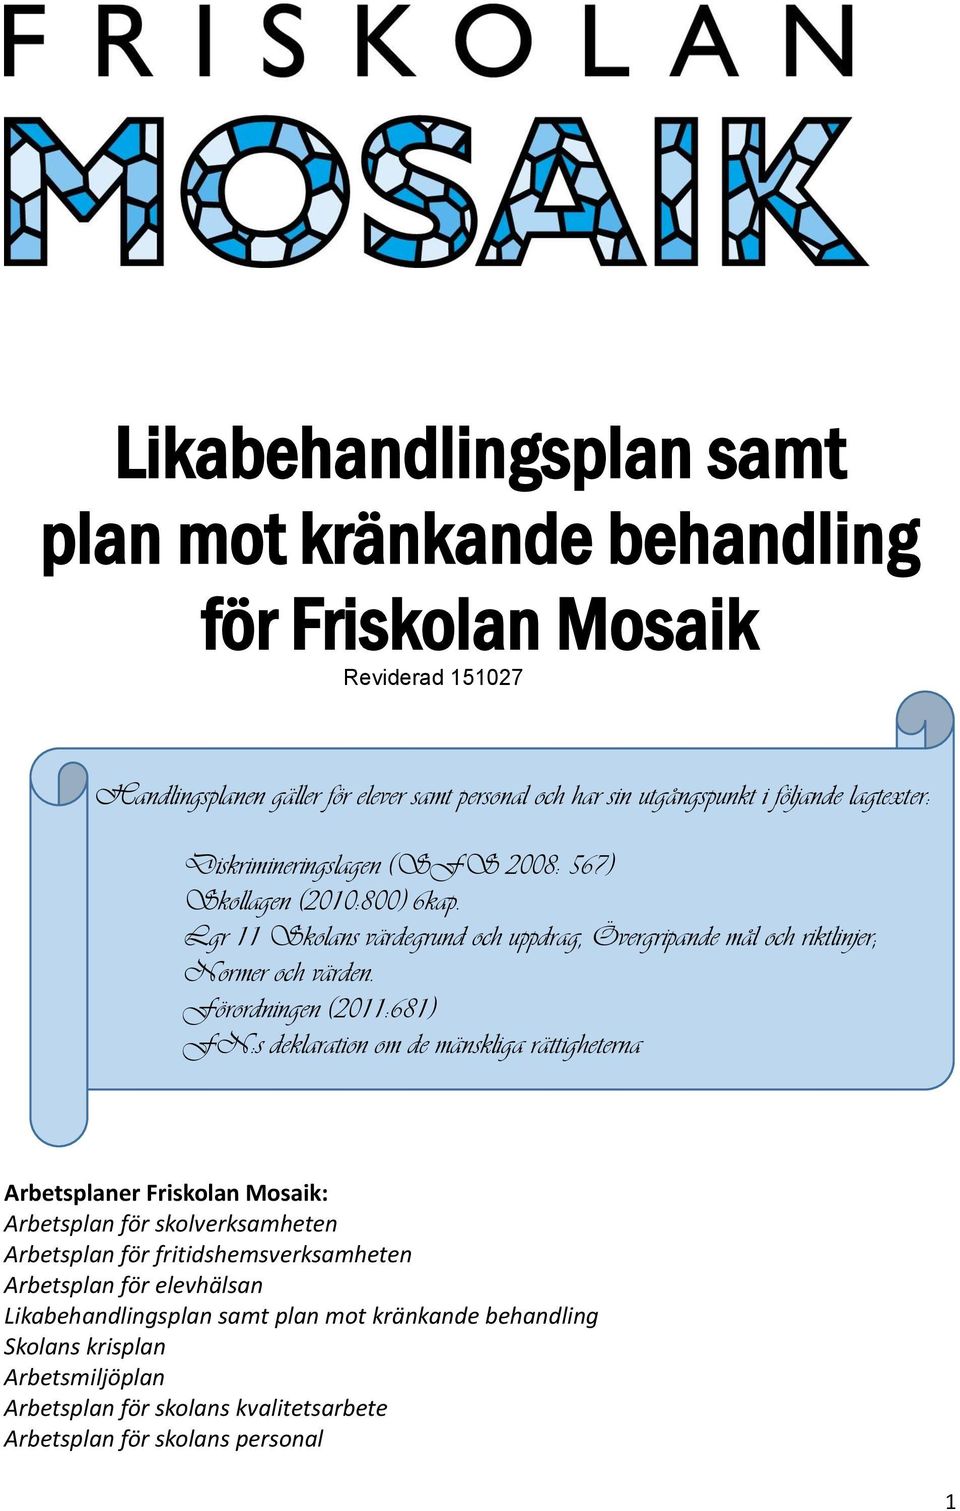 Förordningen (2011:681) FN:s deklaration om de mänskliga rättigheterna Arbetsplaner Friskolan Mosaik: Arbetsplan för skolverksamheten Arbetsplan för fritidshemsverksamheten